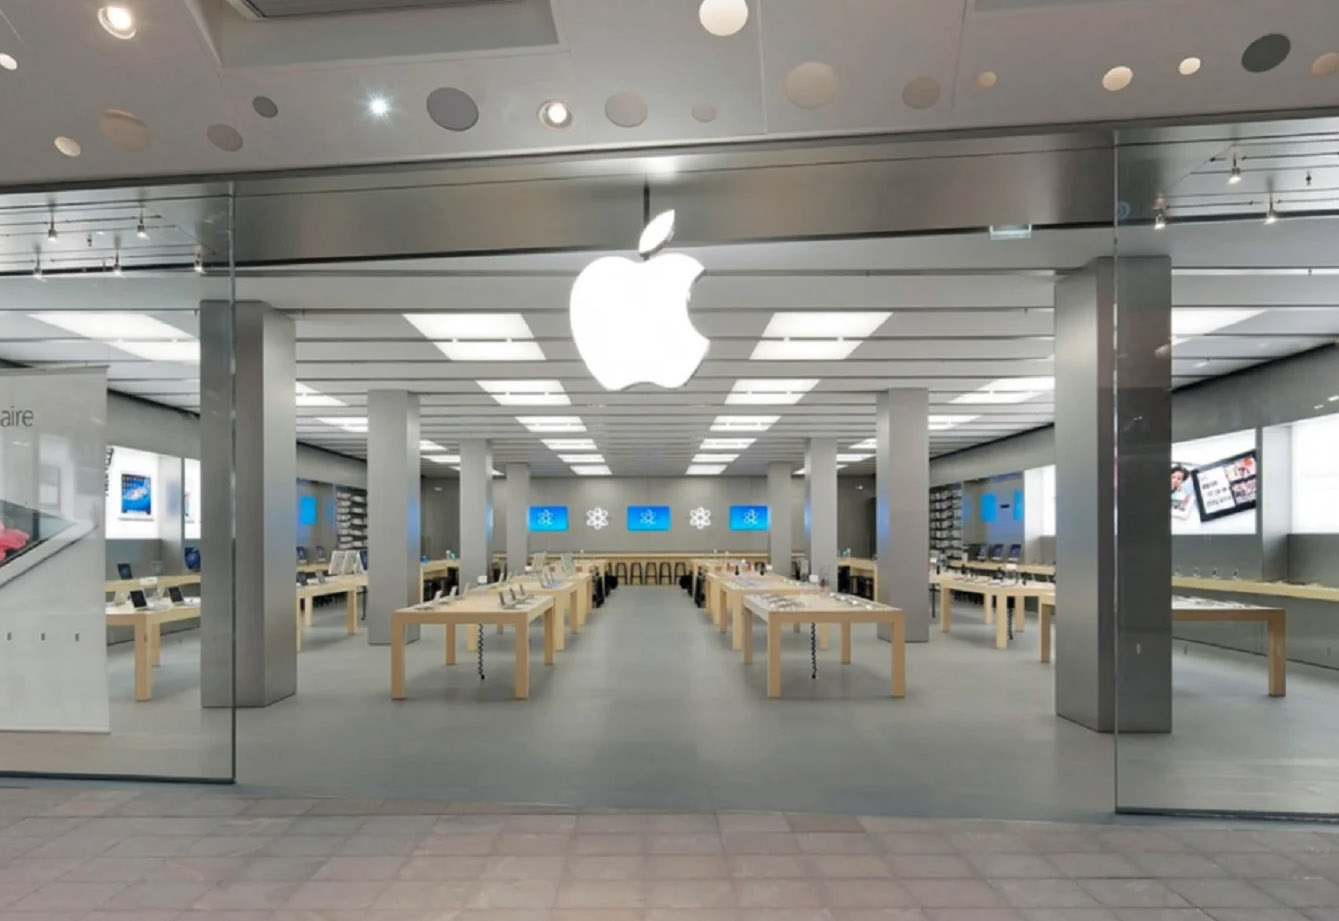 蘋果商店在里昂 Confluence 經過重新裝修後重新開放